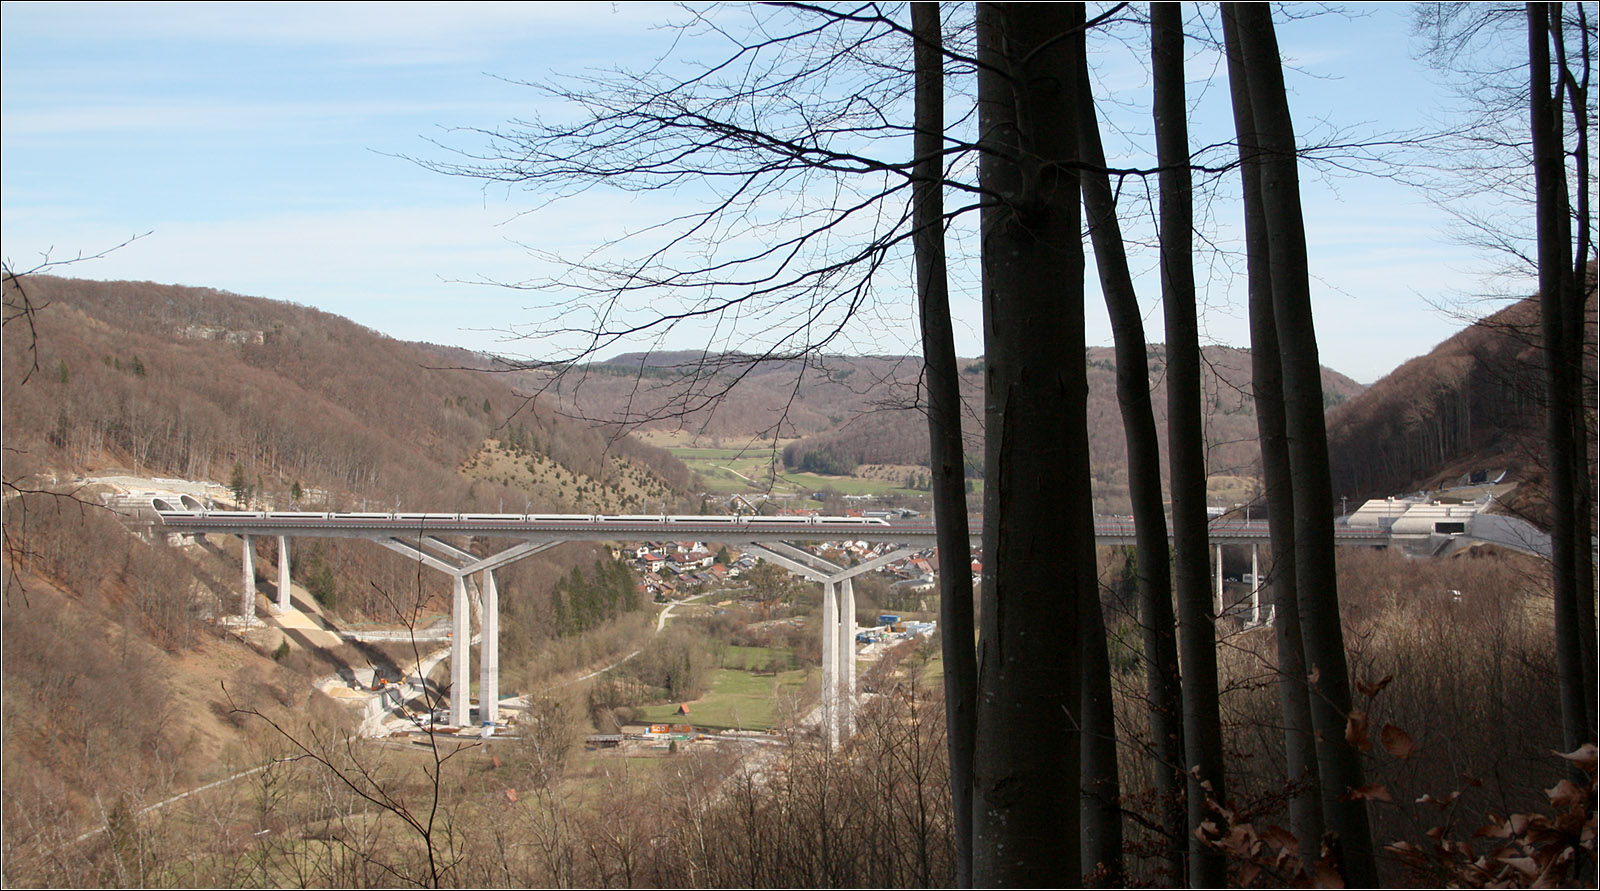 Hoch über dem Filstal - 

Blick aus Halbhöhenlage auf die neue Filstalbrücke an der Schnellfahrstrecke Wendlingen - Ulm mit einem in Richtung München fahrenden ICE 4.

17.03.2023 (M)